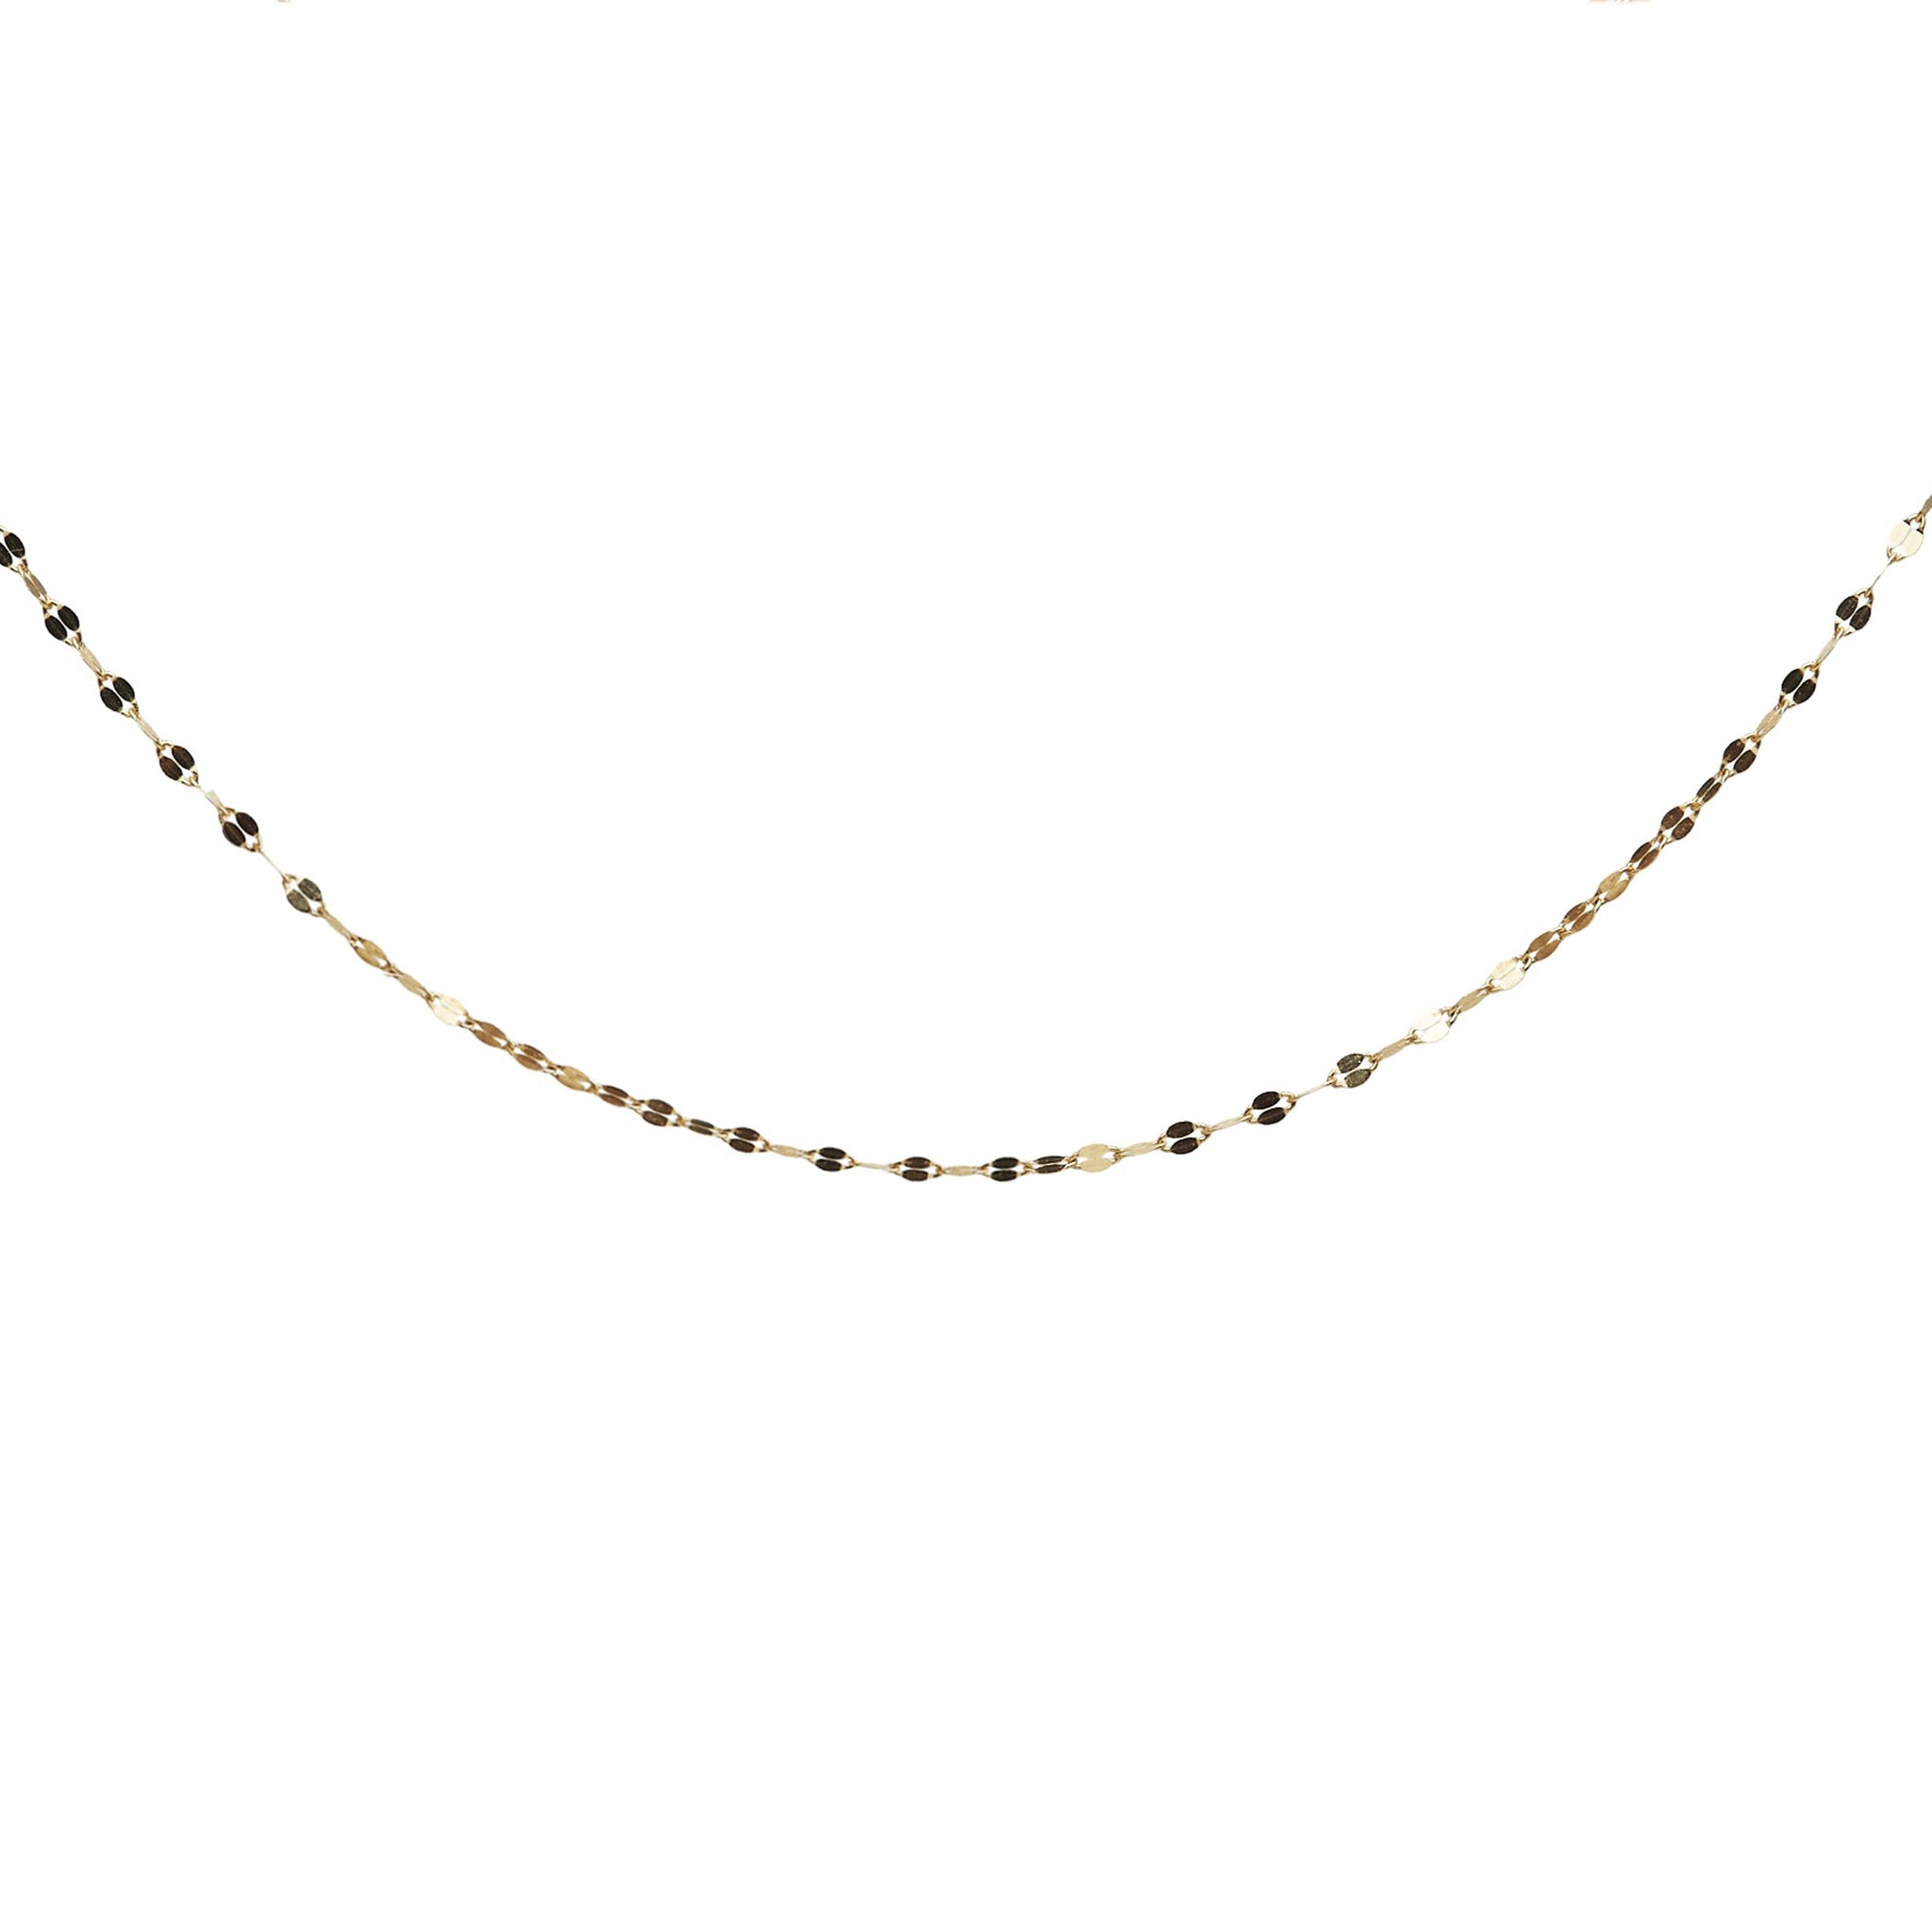 14k gold fine shimmer necklace